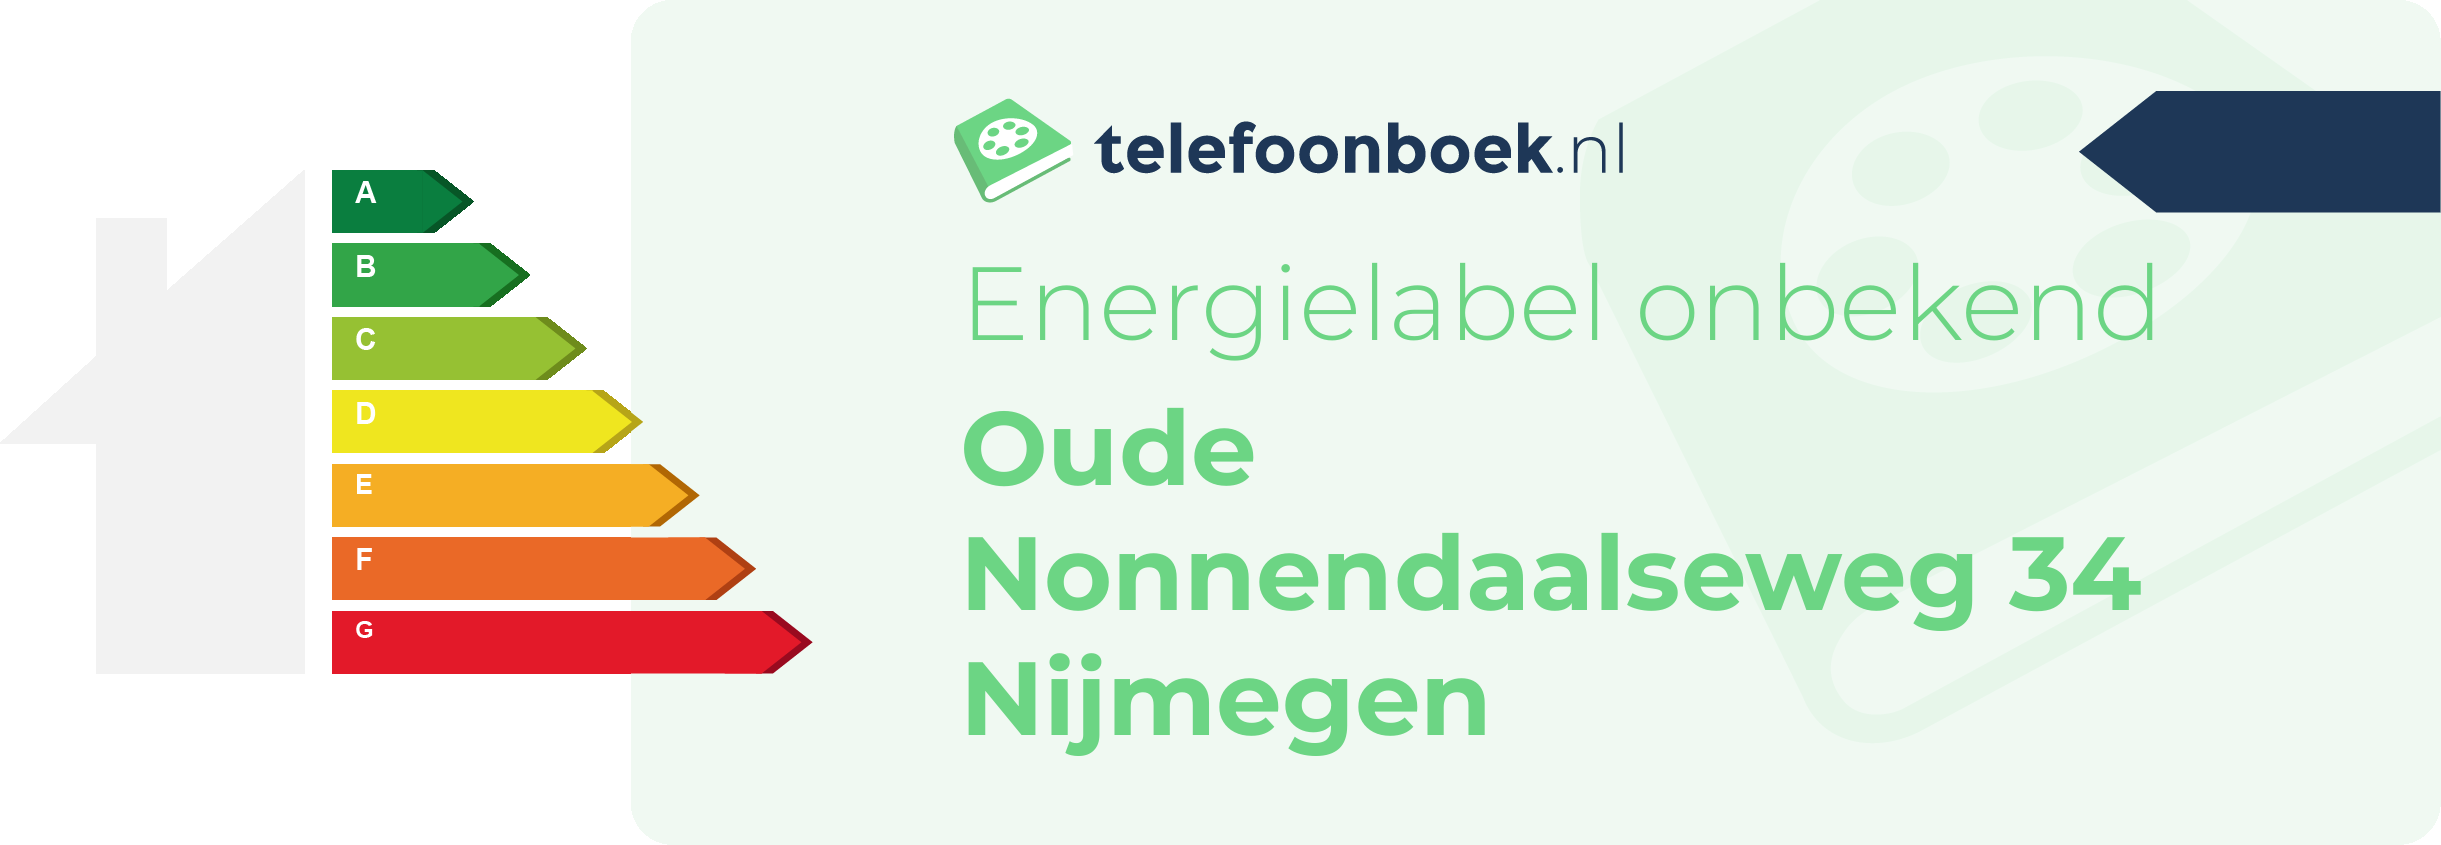 Energielabel Oude Nonnendaalseweg 34 Nijmegen